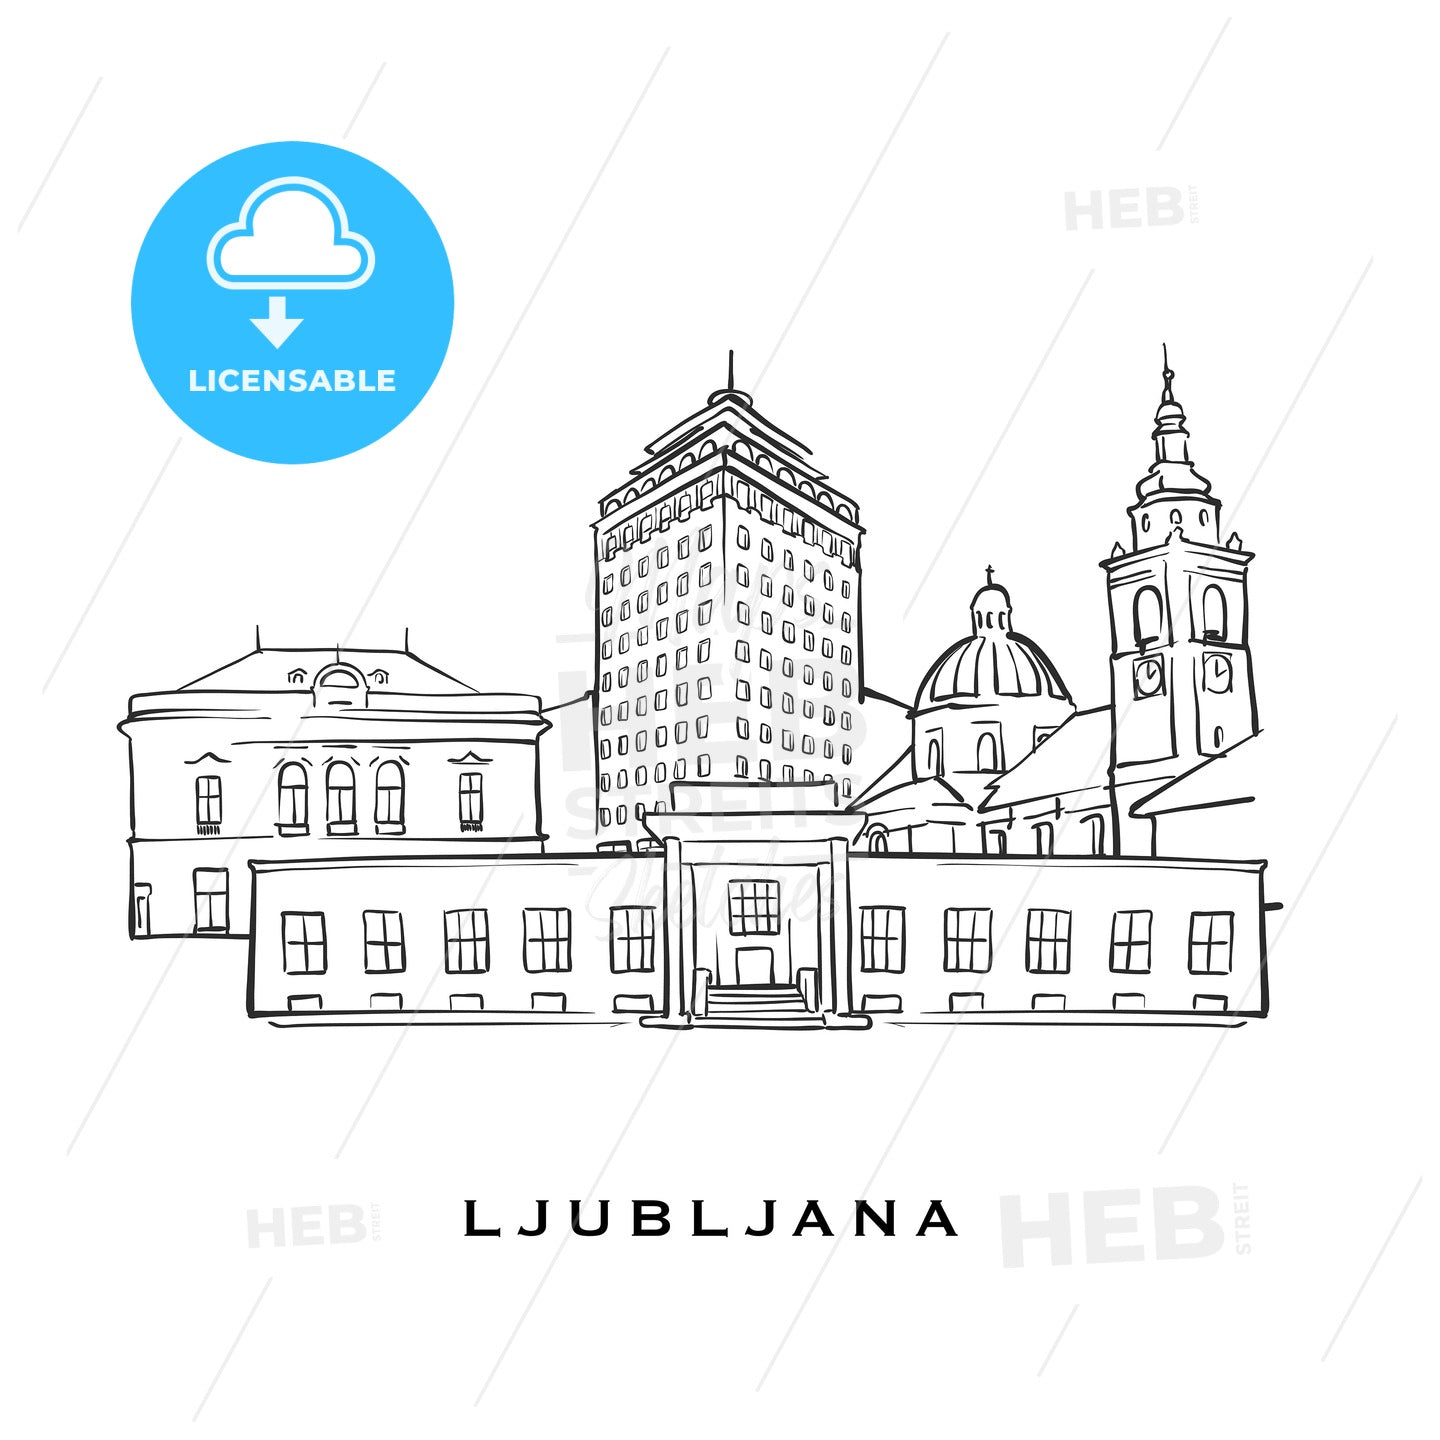 Ljubljana Slovenia famous architecture – instant download